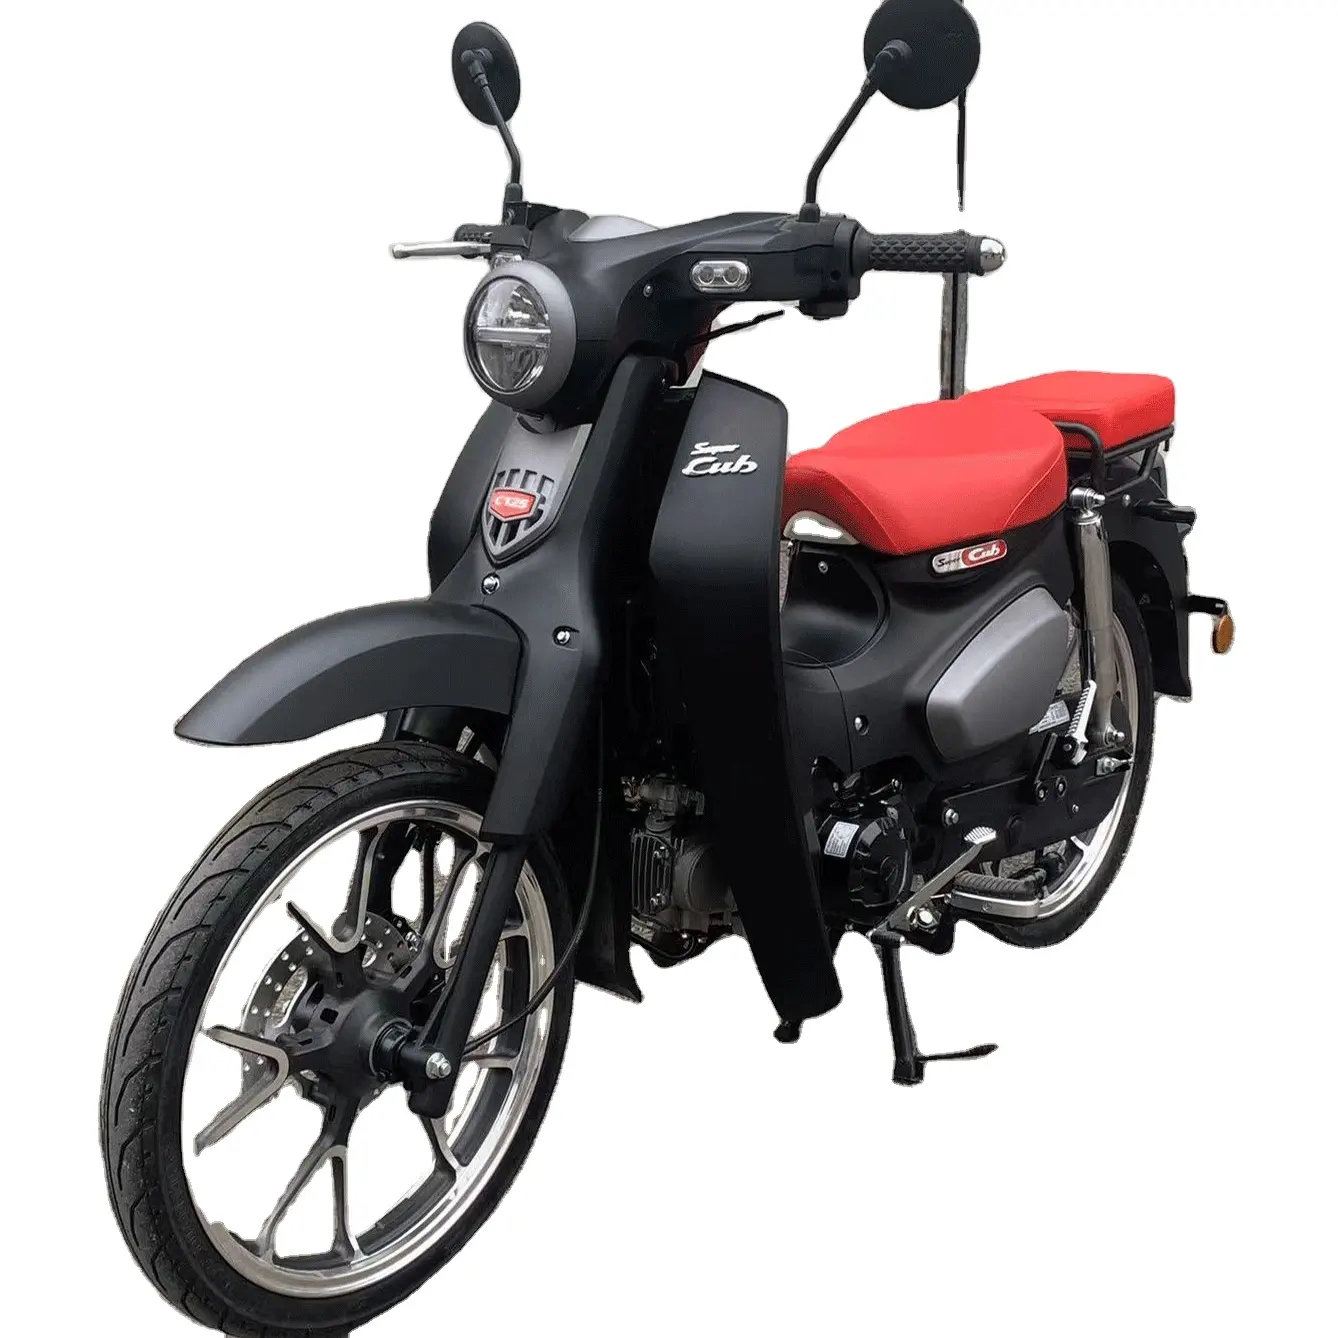 50cc Мотокросс Honda Super Cub 1110cc 125cc Motos винтажный мопед для взрослых, газовые мотоциклы и скутеры